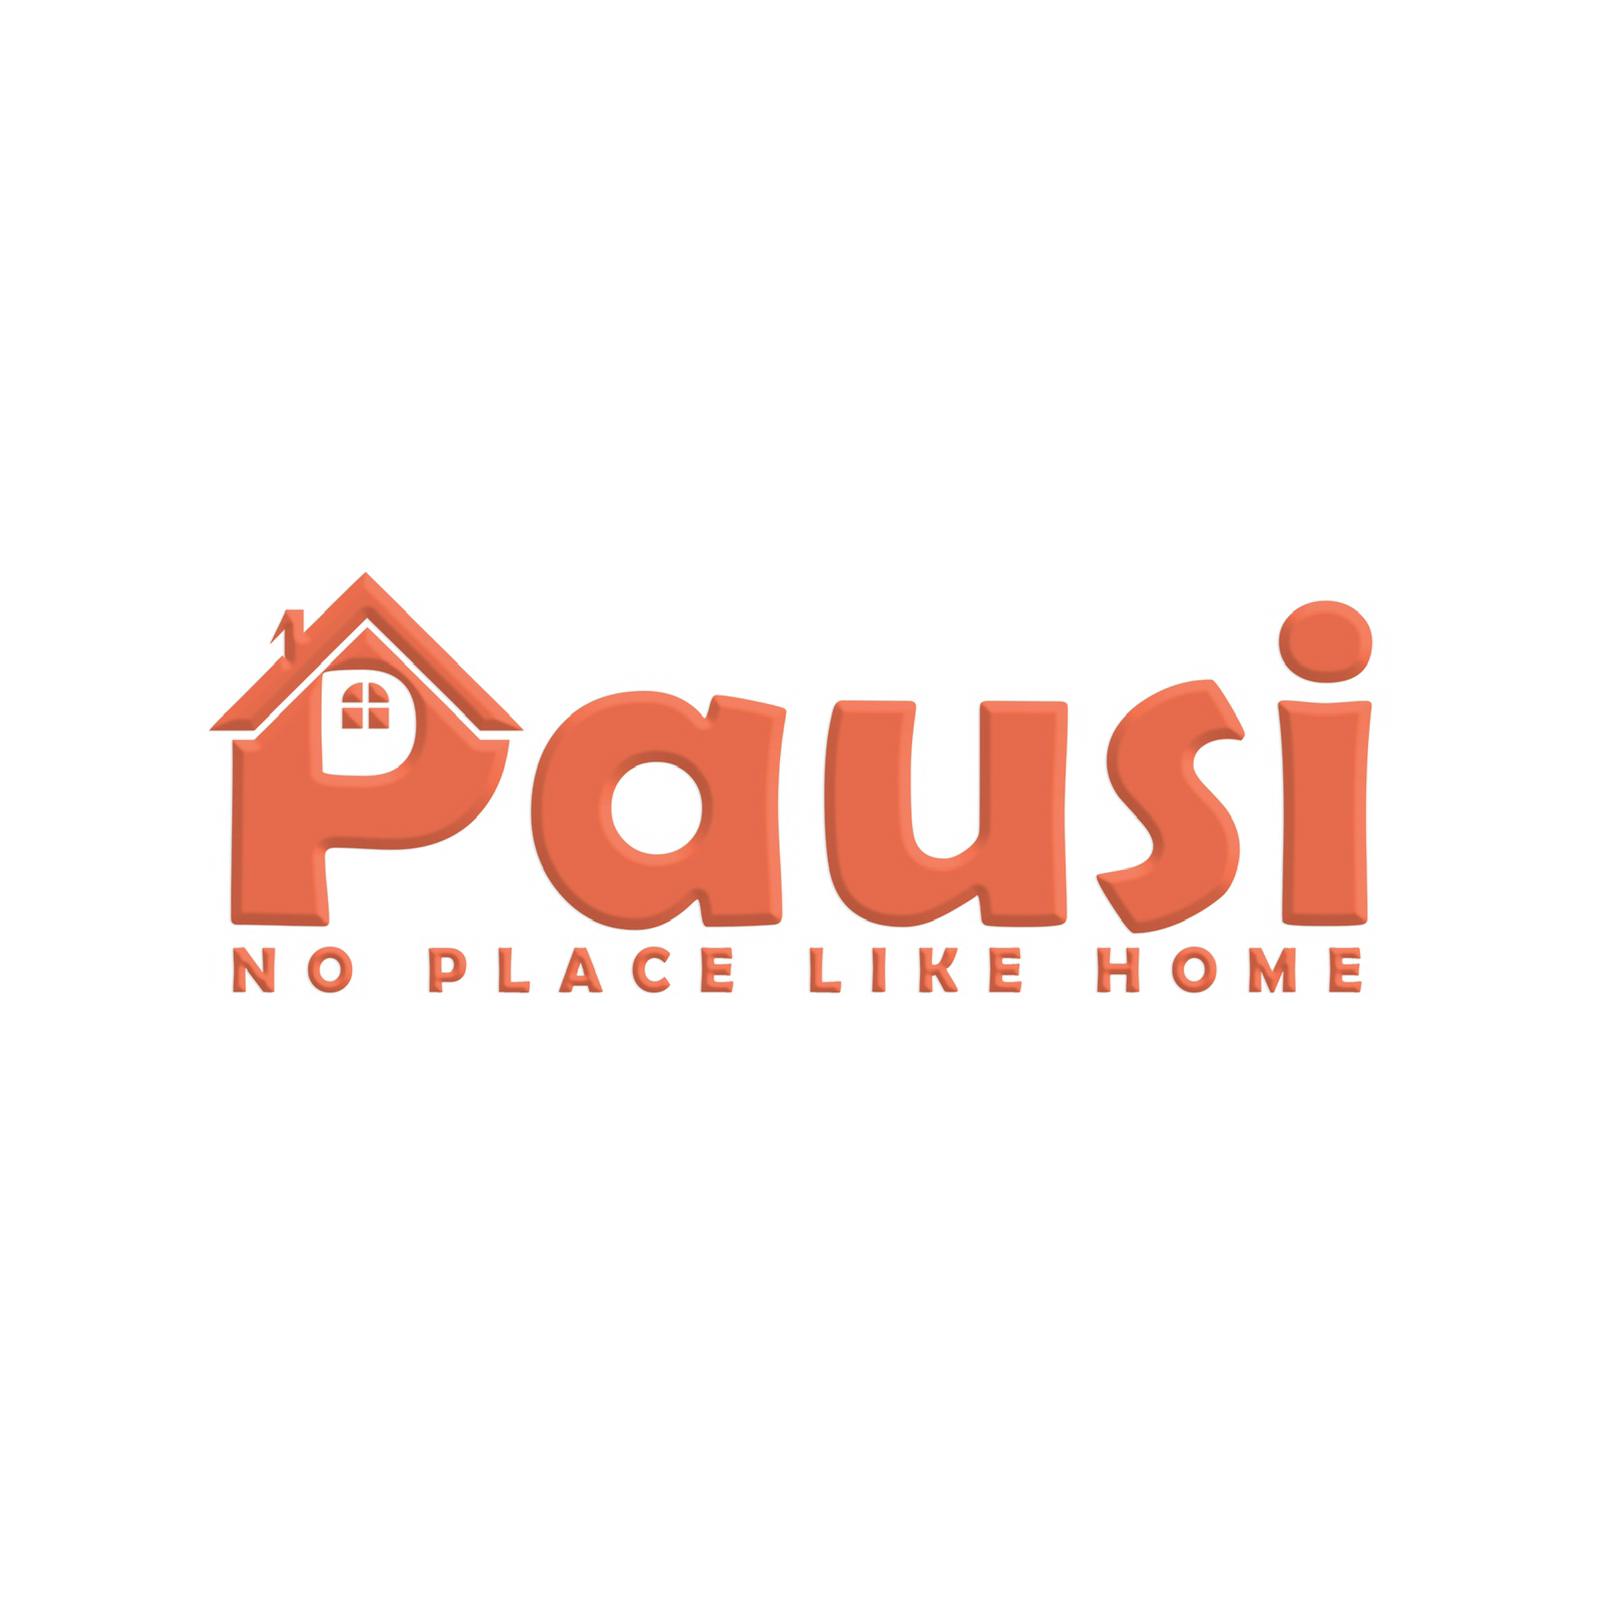 Pausilogo - Home